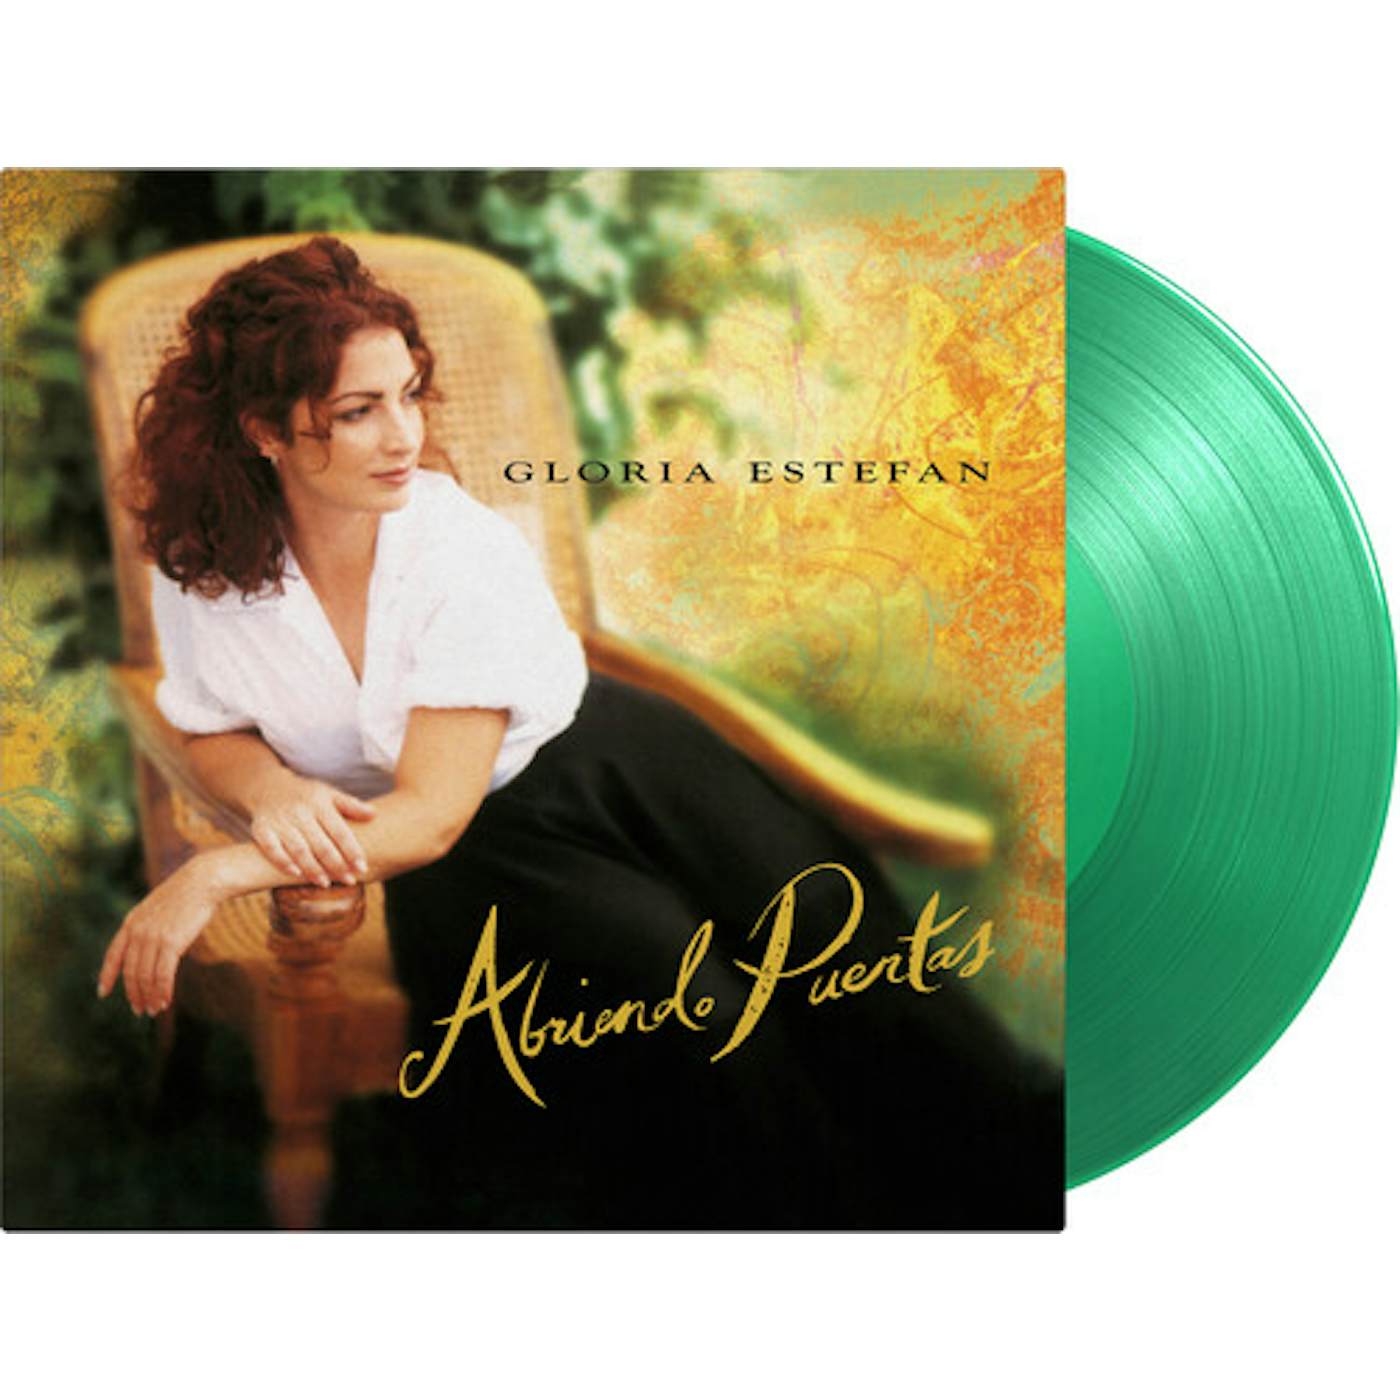 Gloria Estefan Abriendo Puertas Vinyl Record